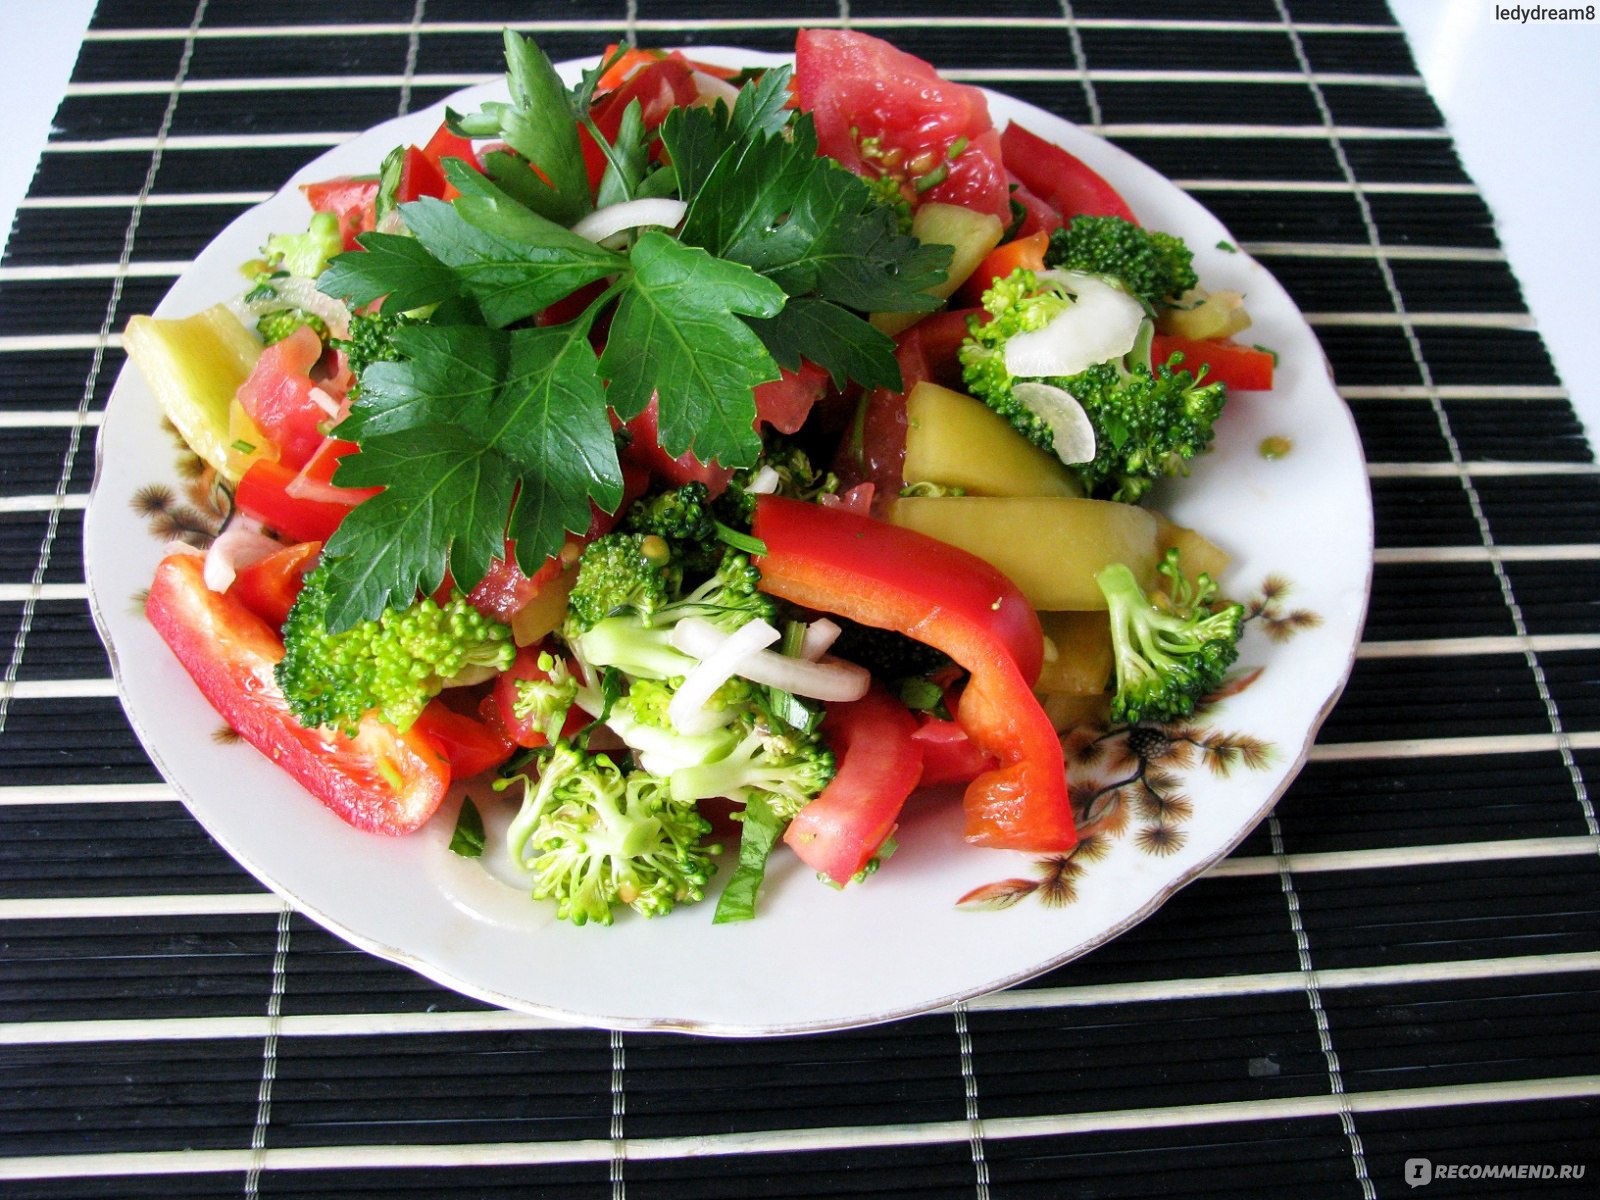 Подача блюд из овощей. Салат с брокколи и болгарским перцем. Красивая подача овощного салата. Салат с сырыми овощами. Салат из сырых овощей.